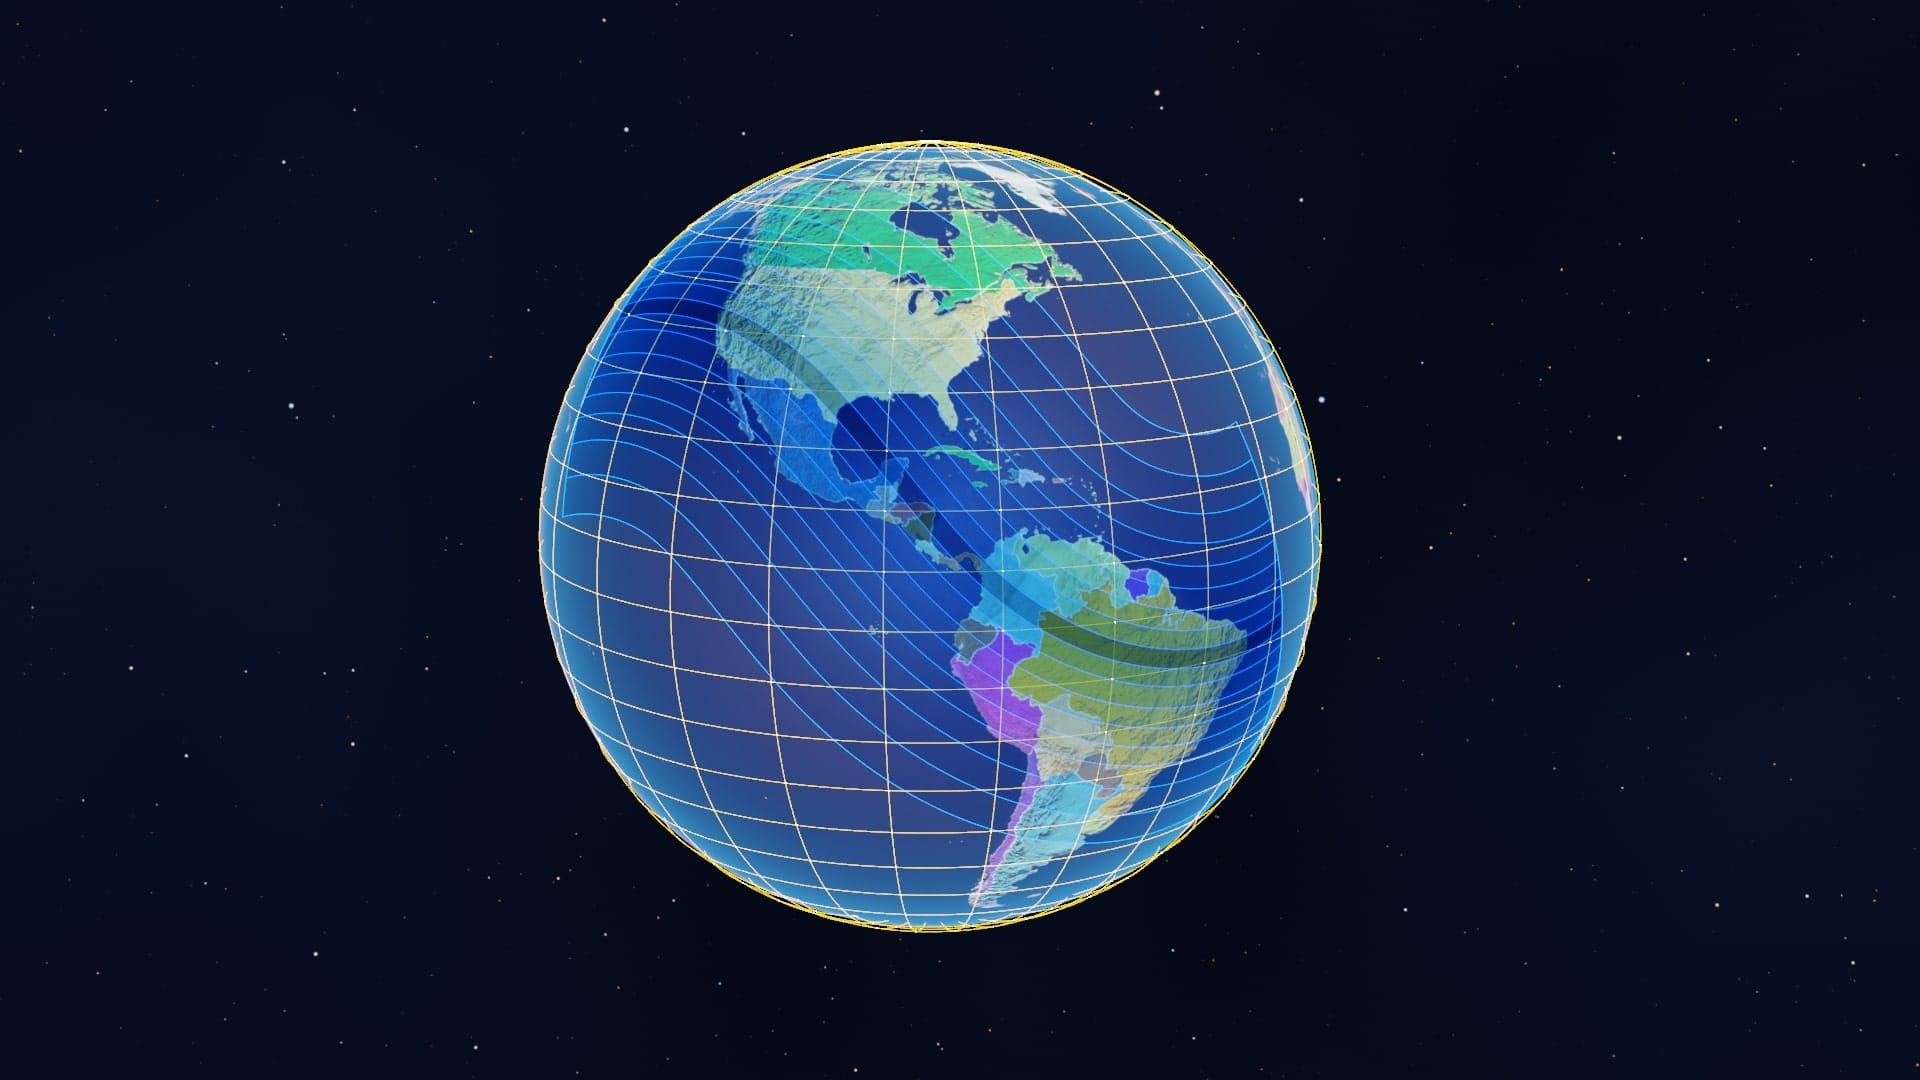 Annular solar eclipse path across the globe